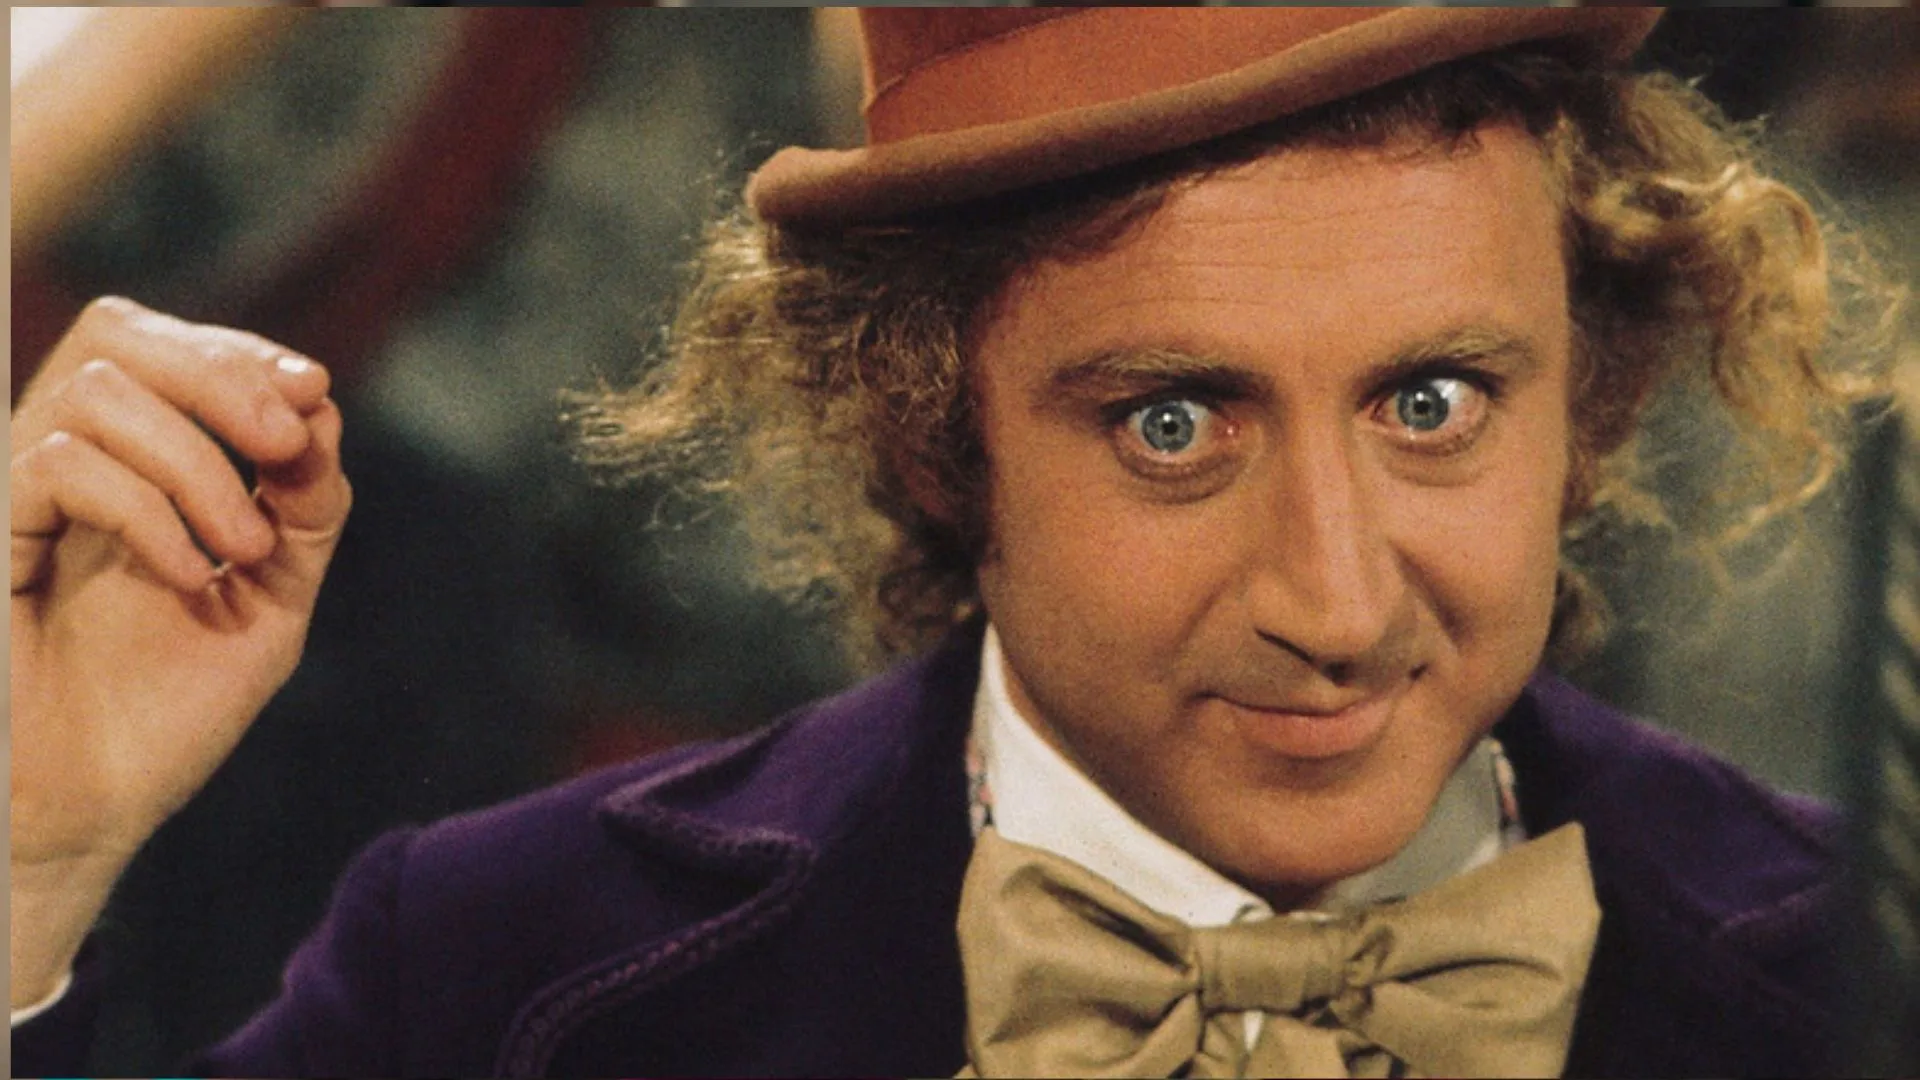 Willy Wonka ha sido interpretado por tres actores en la historia del cine. Cada uno ha aportado su propia versión: únicas y memorables.